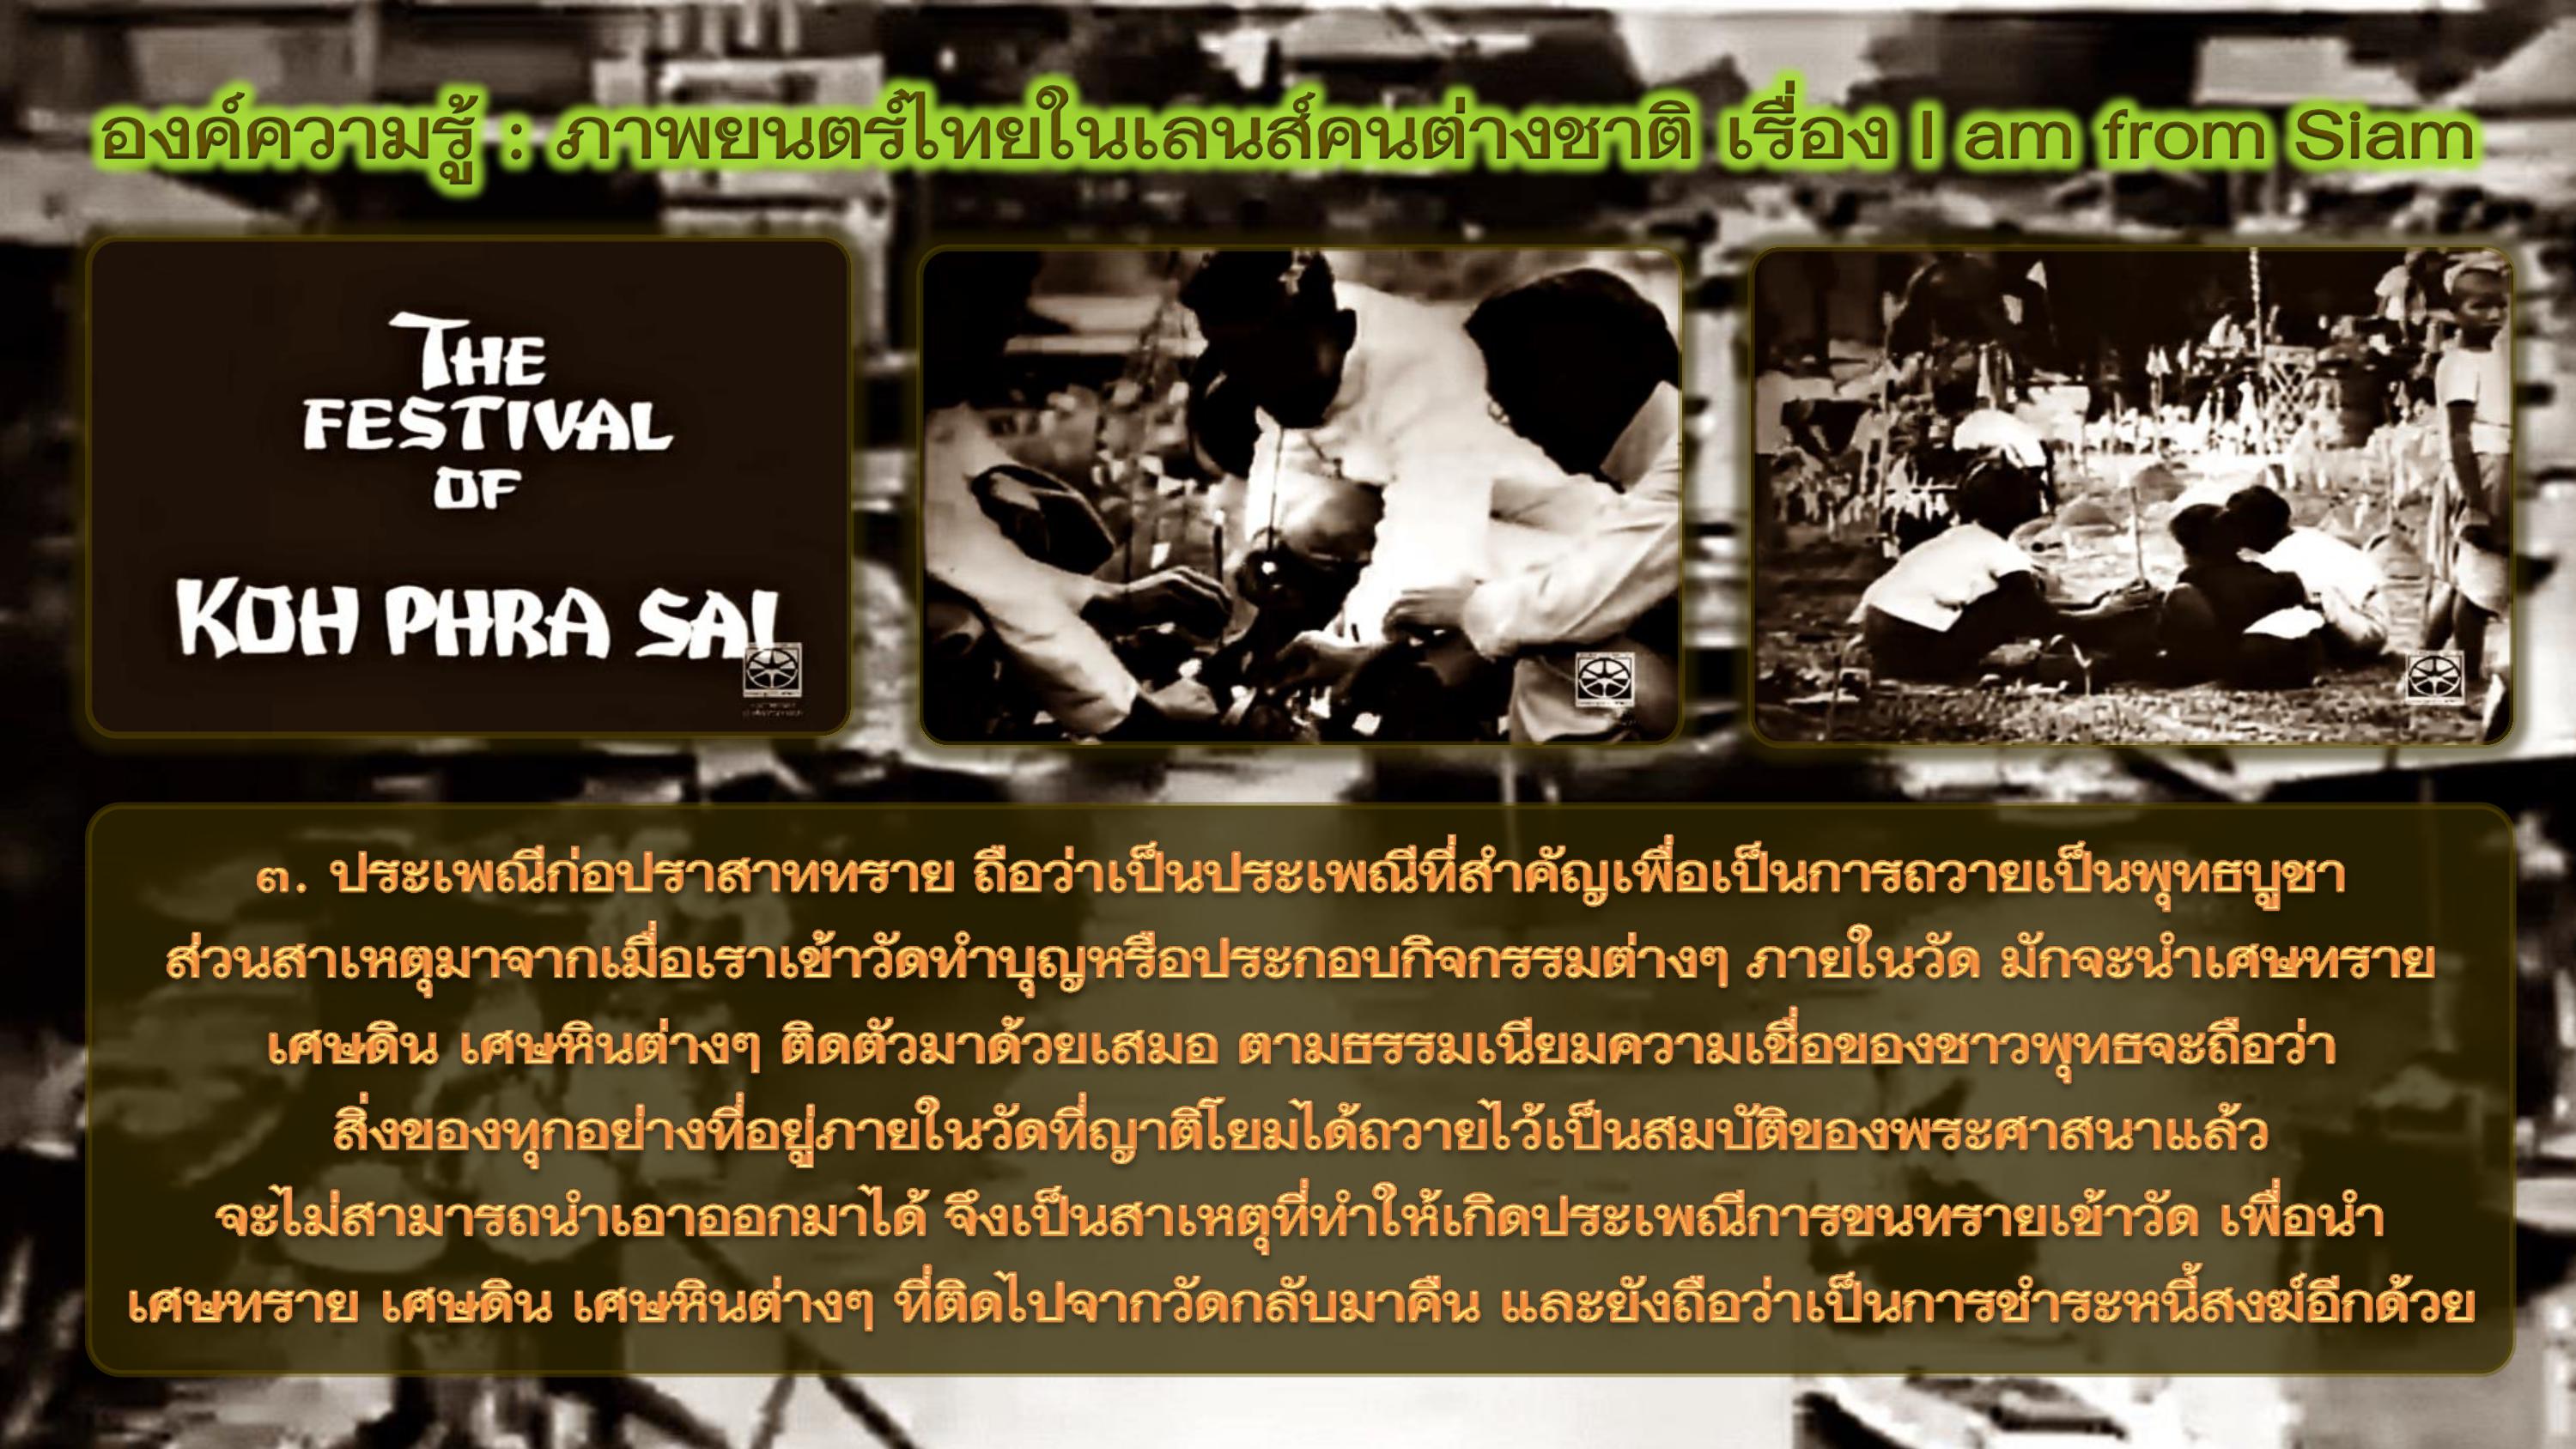 องค์ความรู้ : ภาพยนตร์ไทยในเลนส์คนต่างชาติ เรื่อง I am from Siam